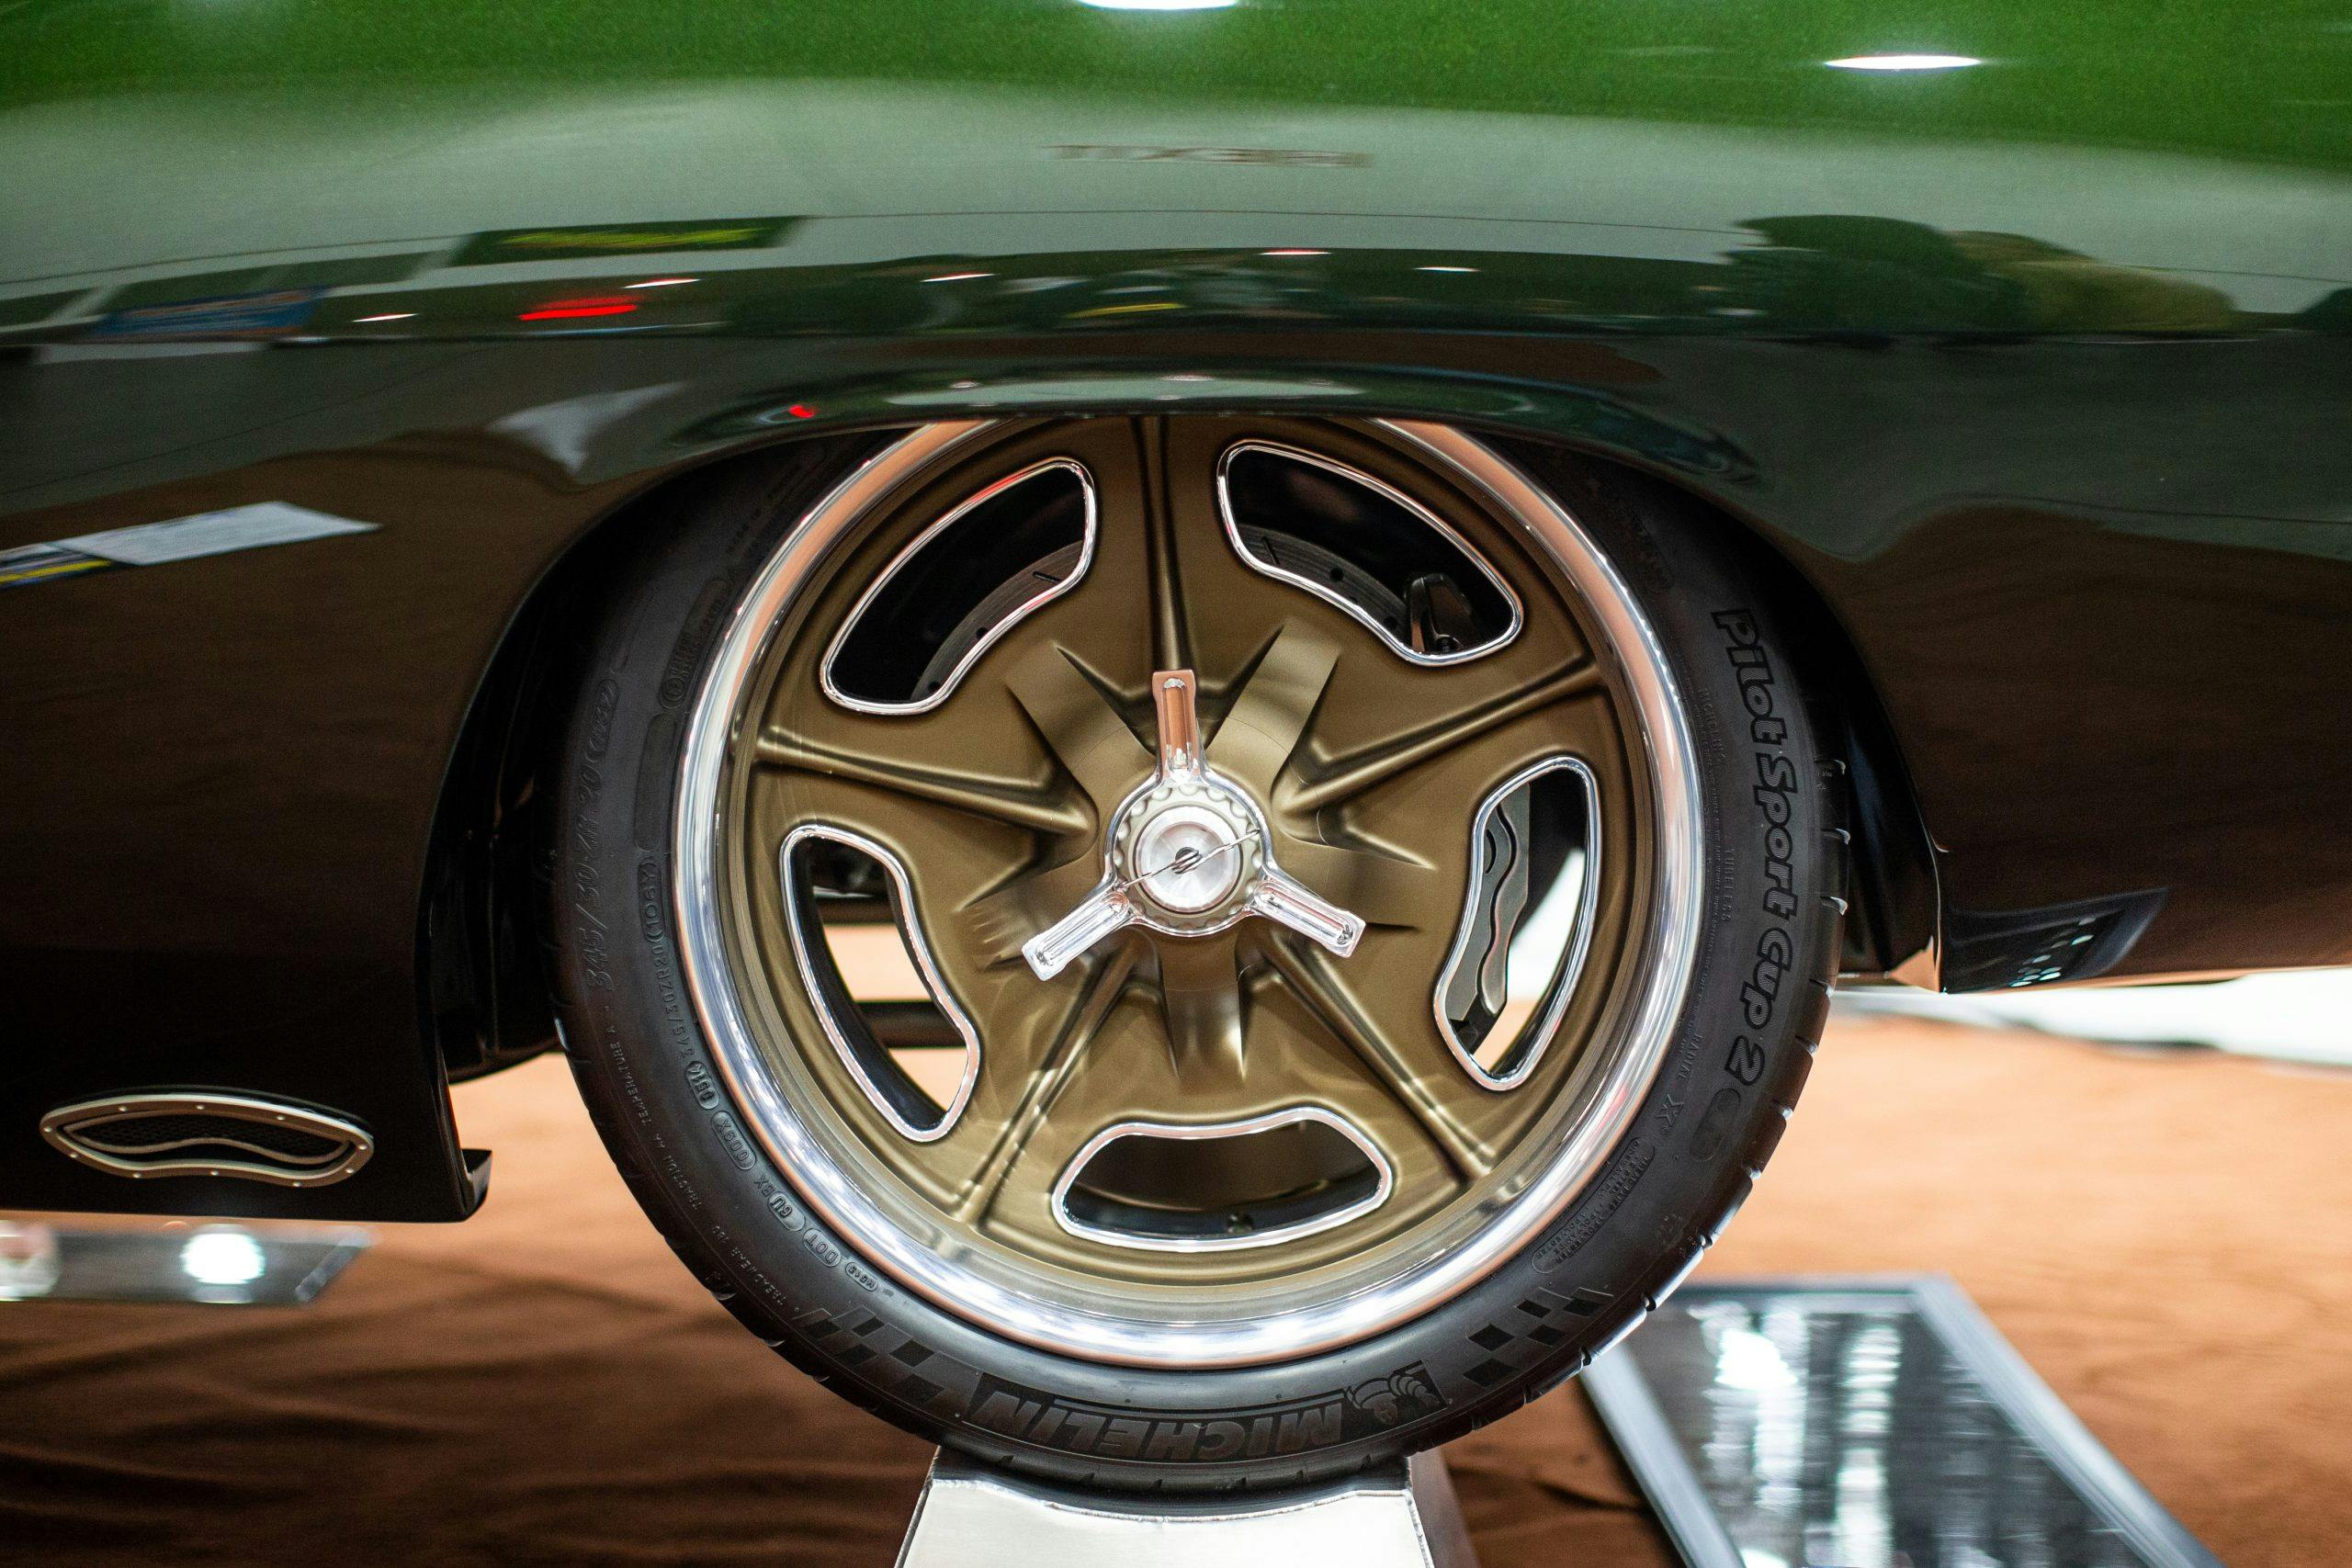 1970 “Hyper Cuda” Plymouth Barracuda wheel